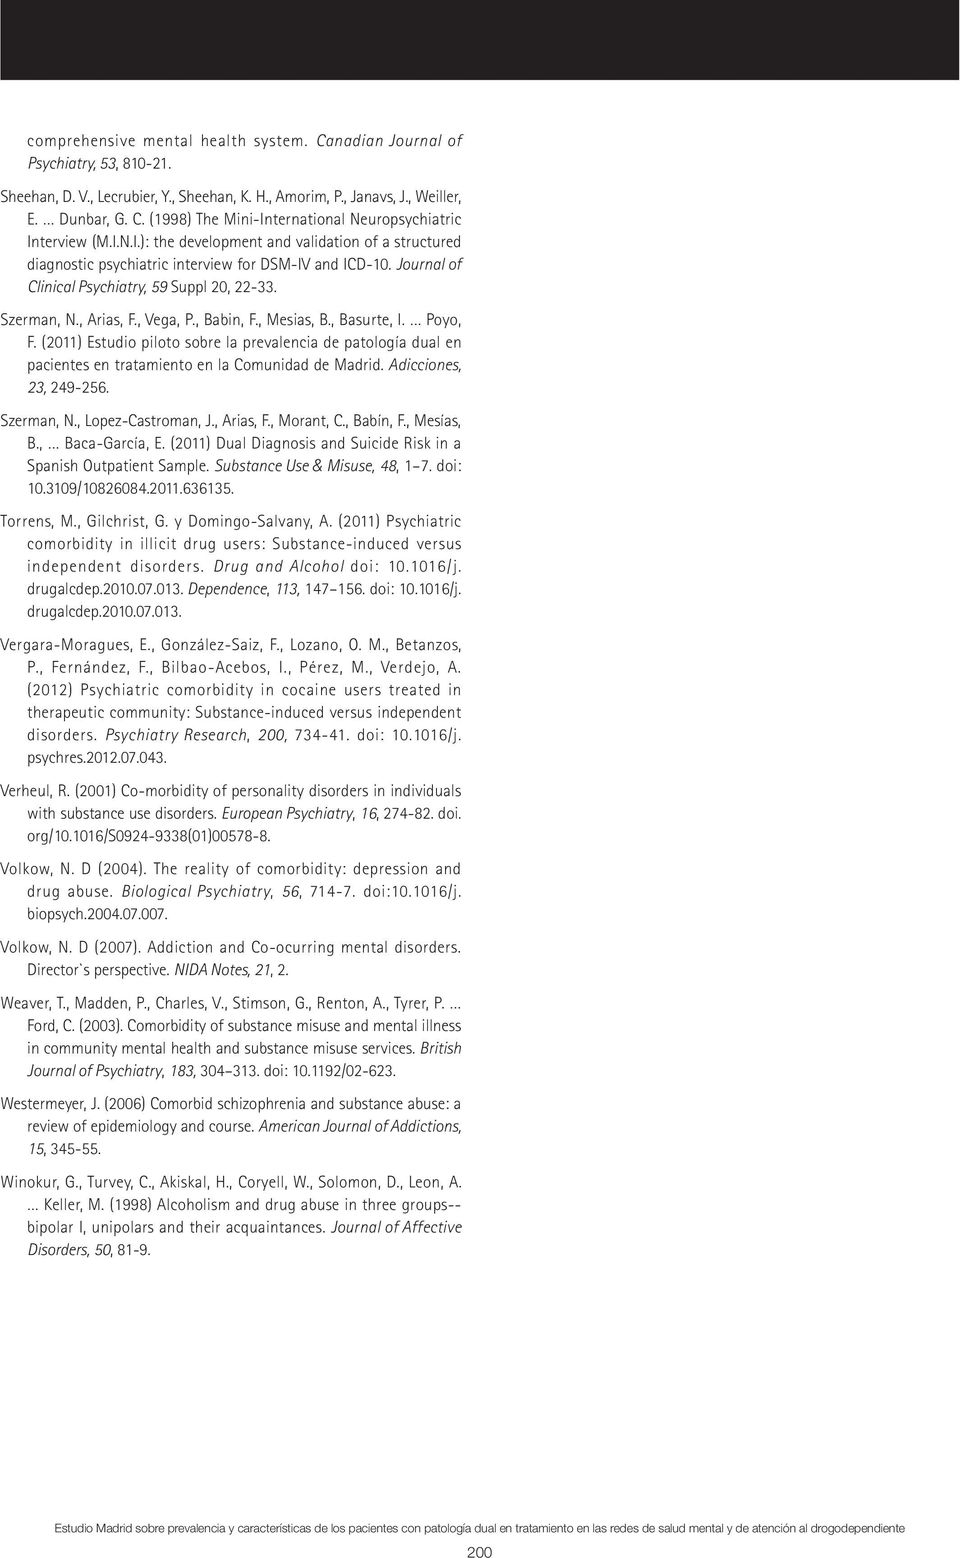 , Babin, F., Mesias, B., Basurte, I. Poyo, F. (2011) Estudio piloto sobre la prevalencia de patología dual en pacientes en tratamiento en la Comunidad de Madrid. Adicciones, 23, 249-256. Szerman, N.